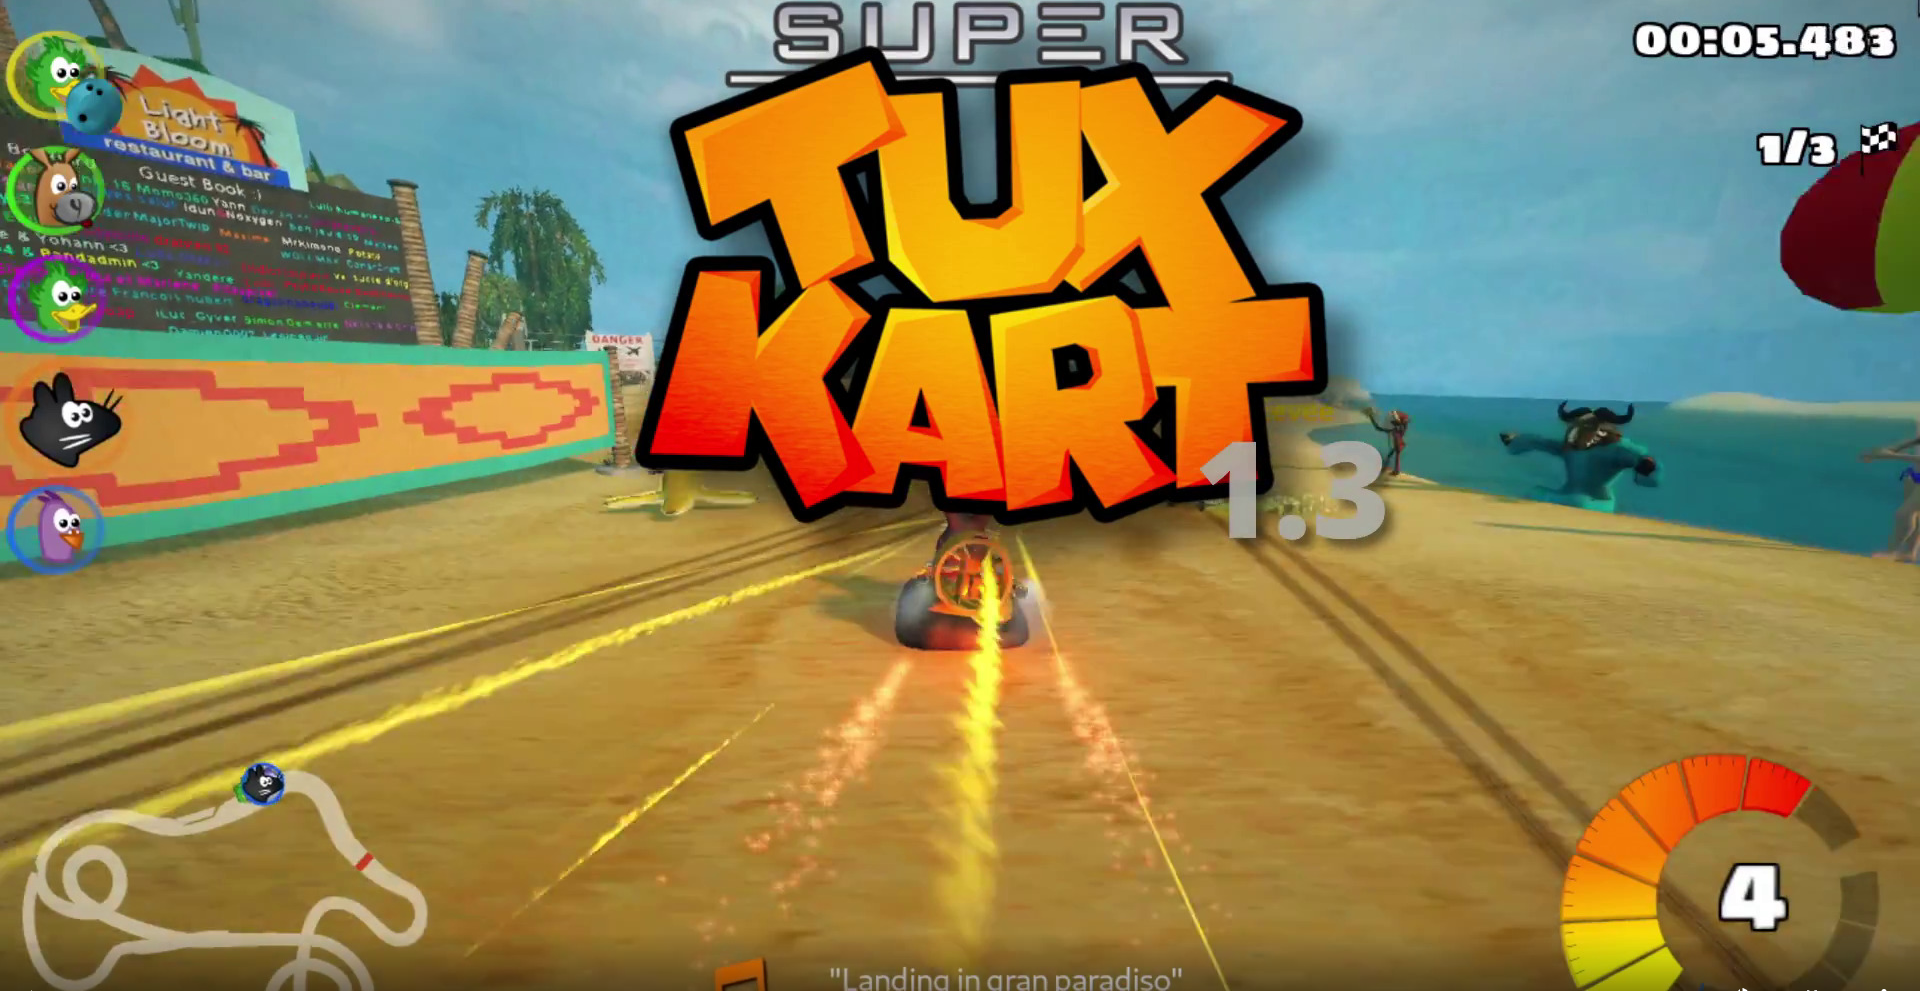 SuperTuxKart 1.3 lançado com novas arenas, novos karts e melhorias na interface